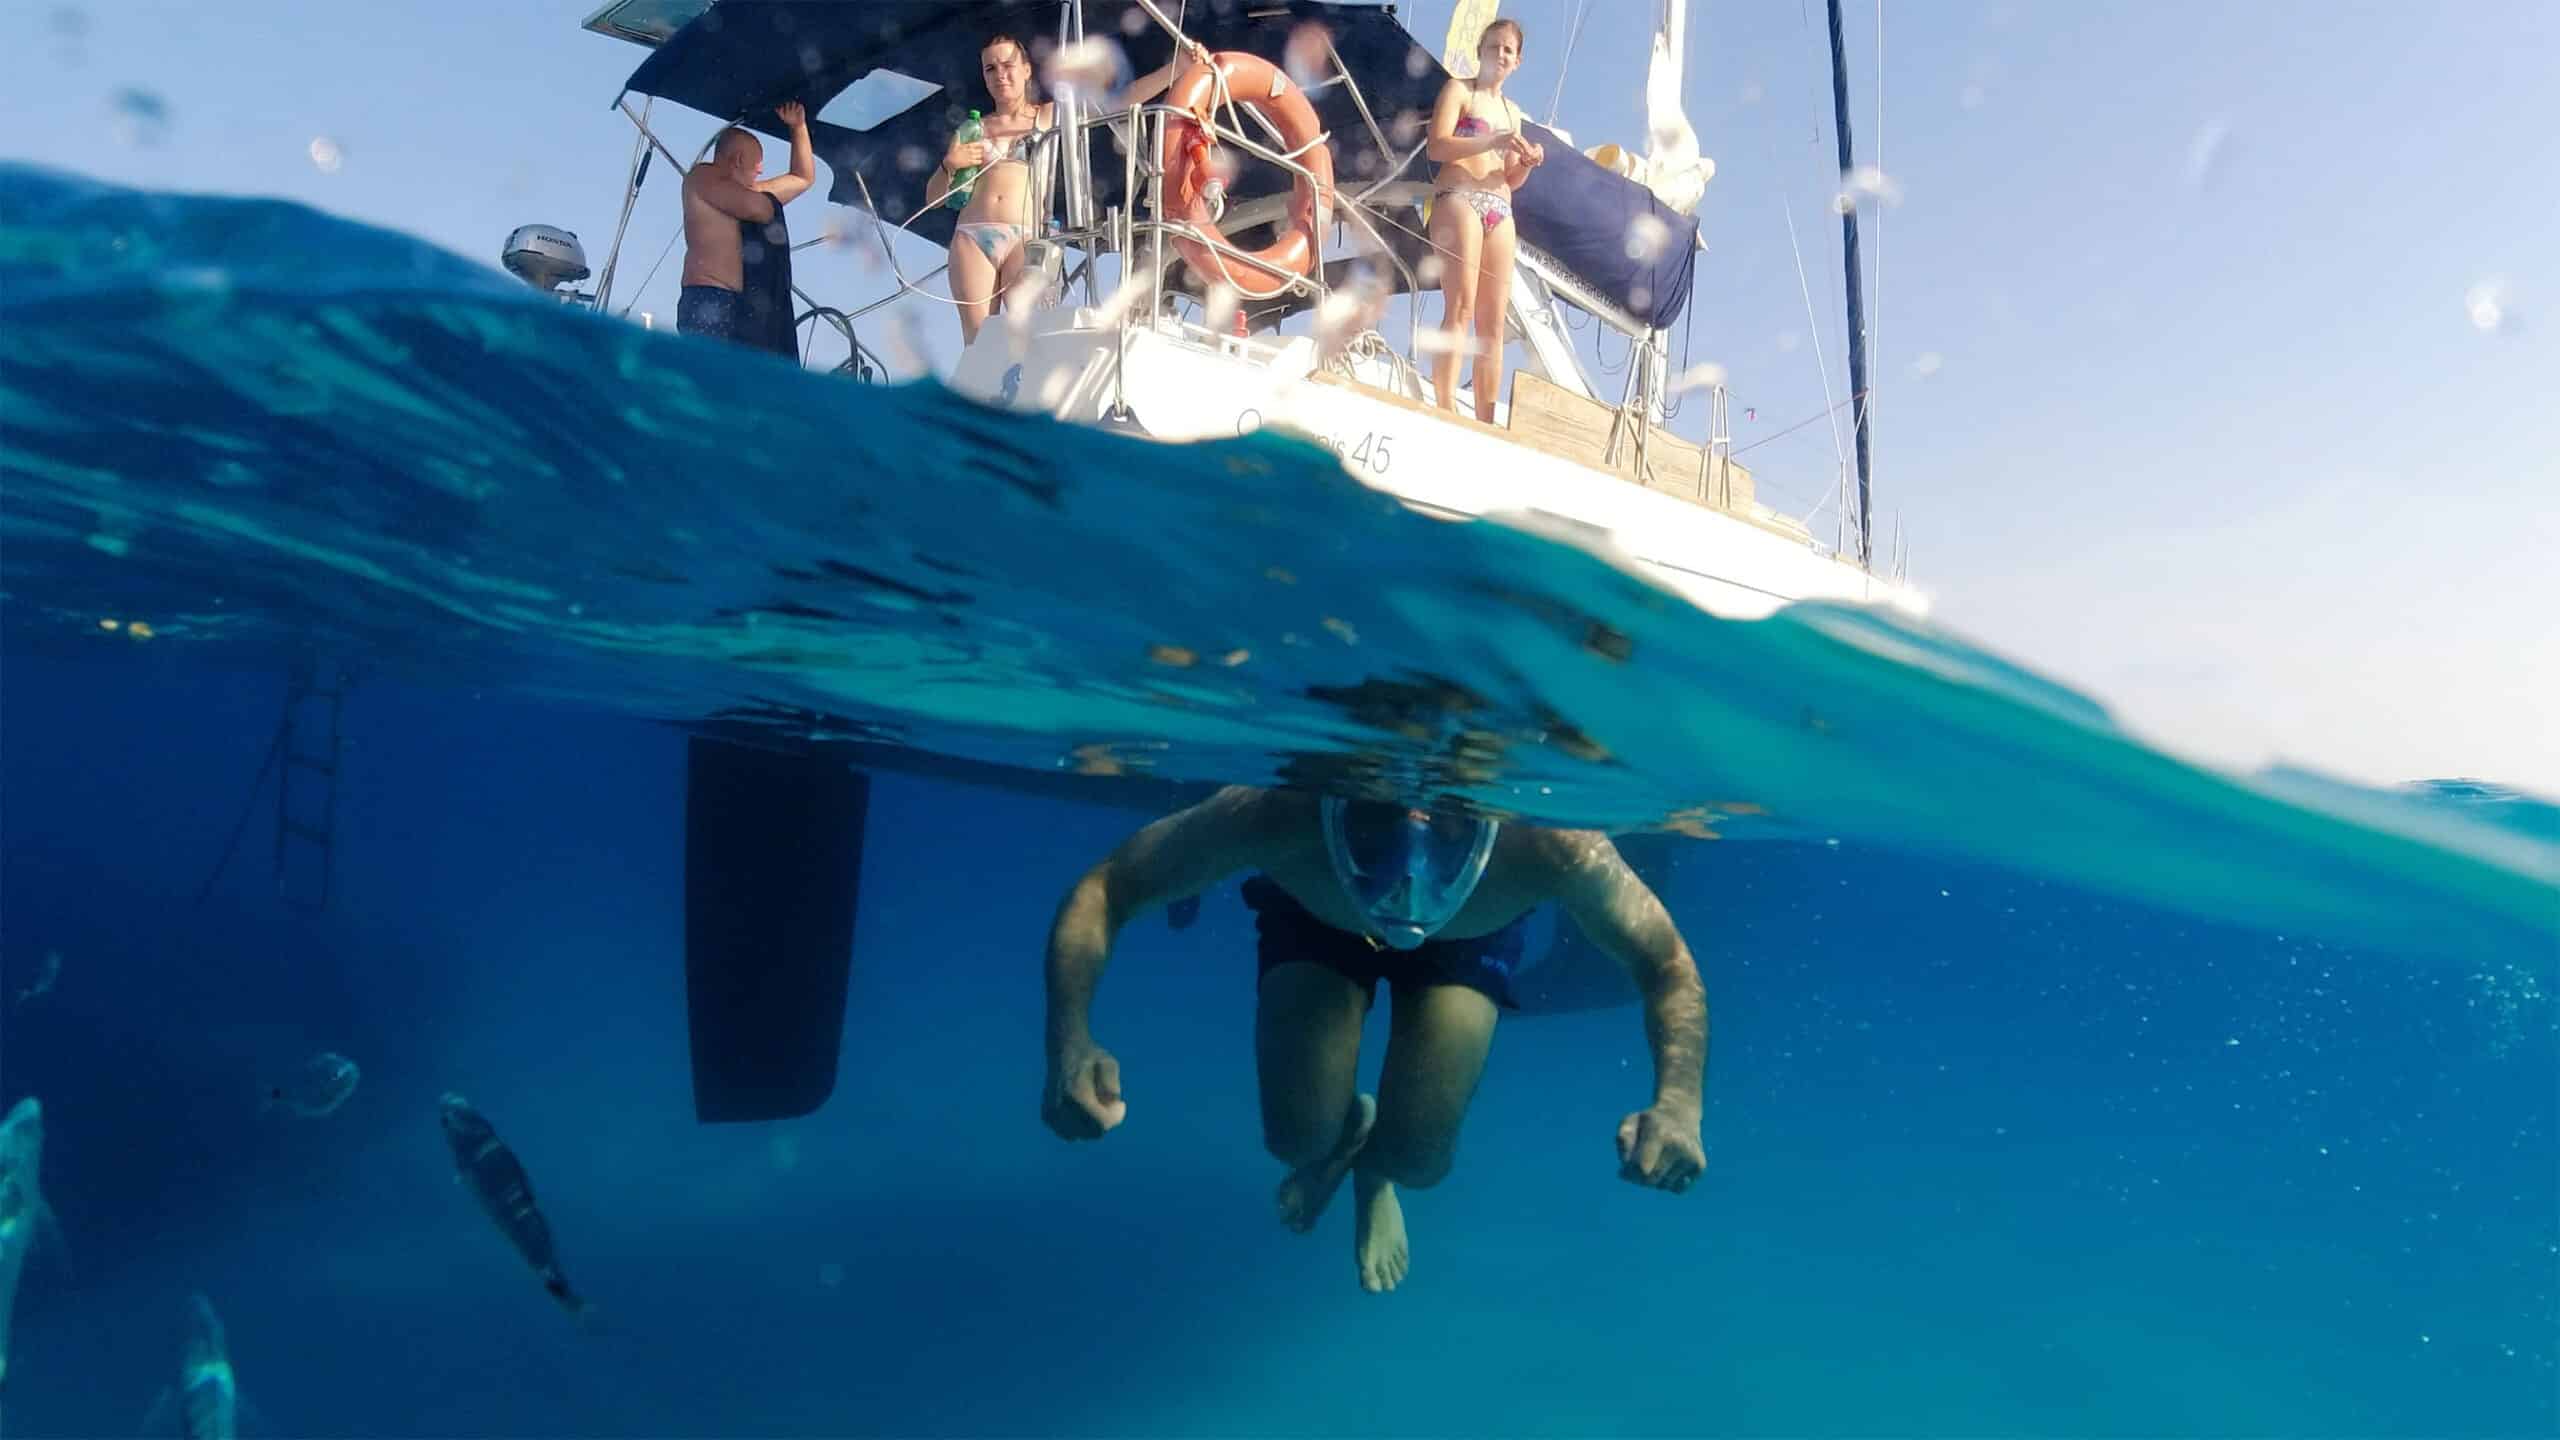 Ein Schnorchler schwimmt unter Wasser neben einem schnittigen Katamaran mit Menschen an Bord. Das Bild fängt sowohl die Unterwasserszene ein, auf der ein paar Fische zu sehen sind, als auch das Boot darüber, auf dem mehrere Menschen in Badebekleidung zu sehen sind, die auf den Schwimmer herabblicken.